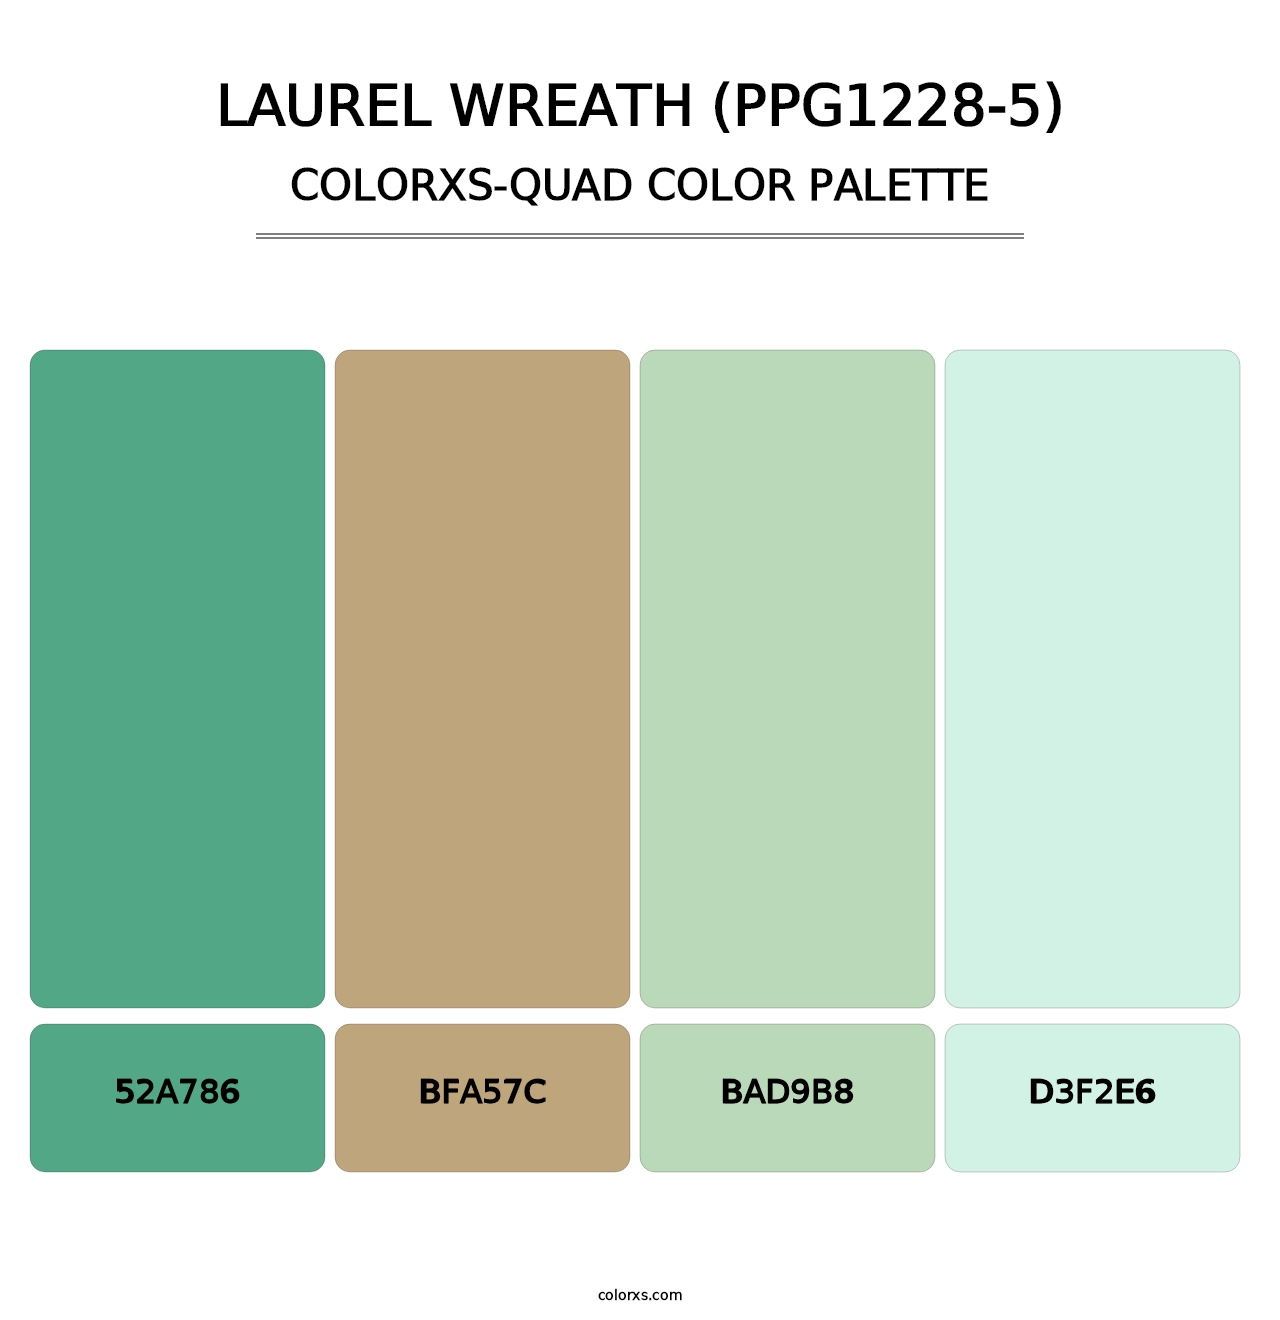 Laurel Wreath (PPG1228-5) - Colorxs Quad Palette